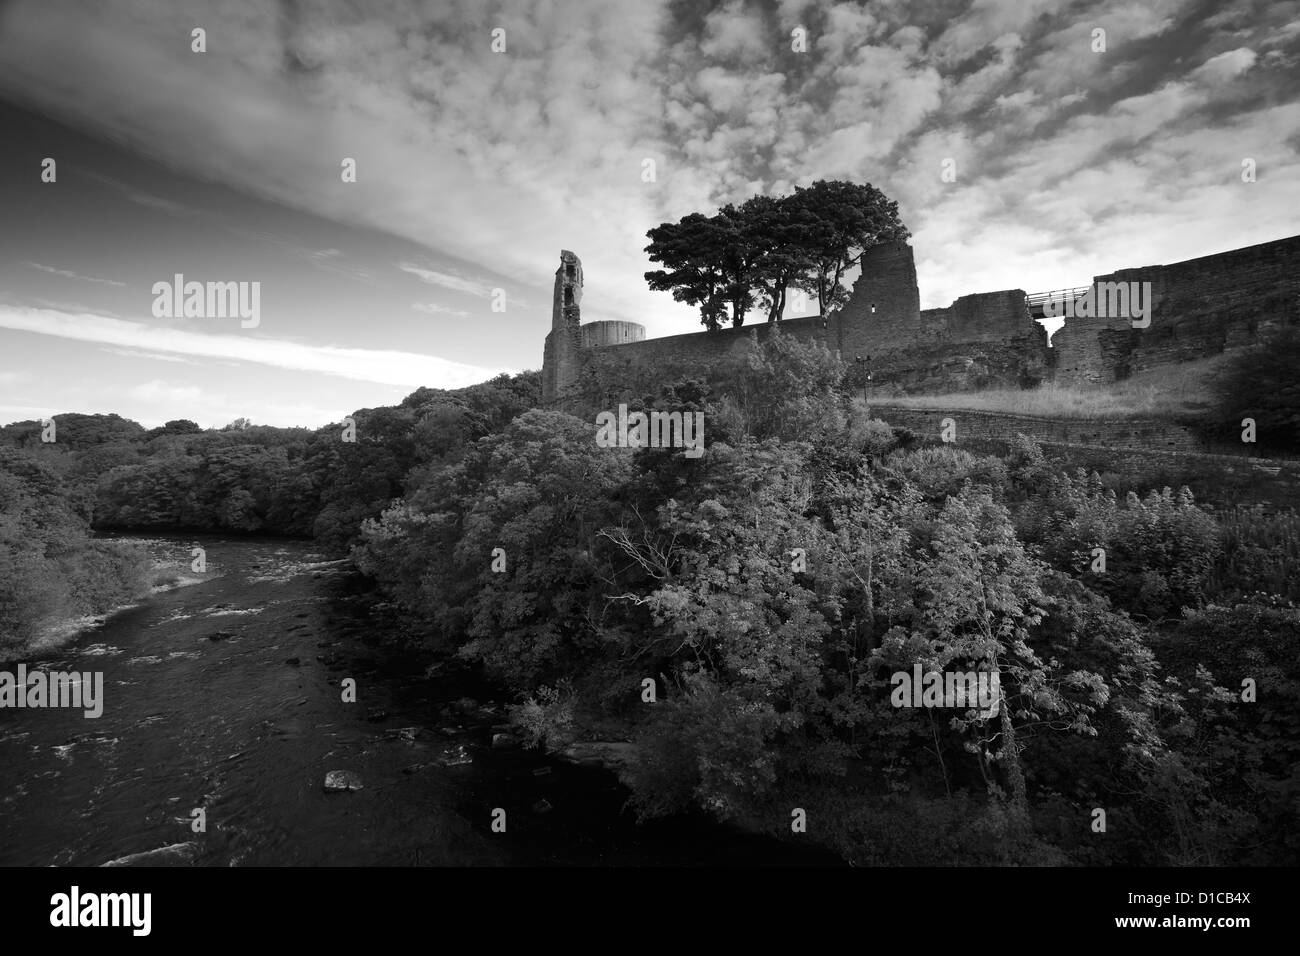 Le noir et blanc vue panoramique des ruines de Barnard Castle, Barnard Castle town, Upper Teesdale, comté de Durham, Angleterre, Grande-Bretagne, Royaume-Uni Banque D'Images